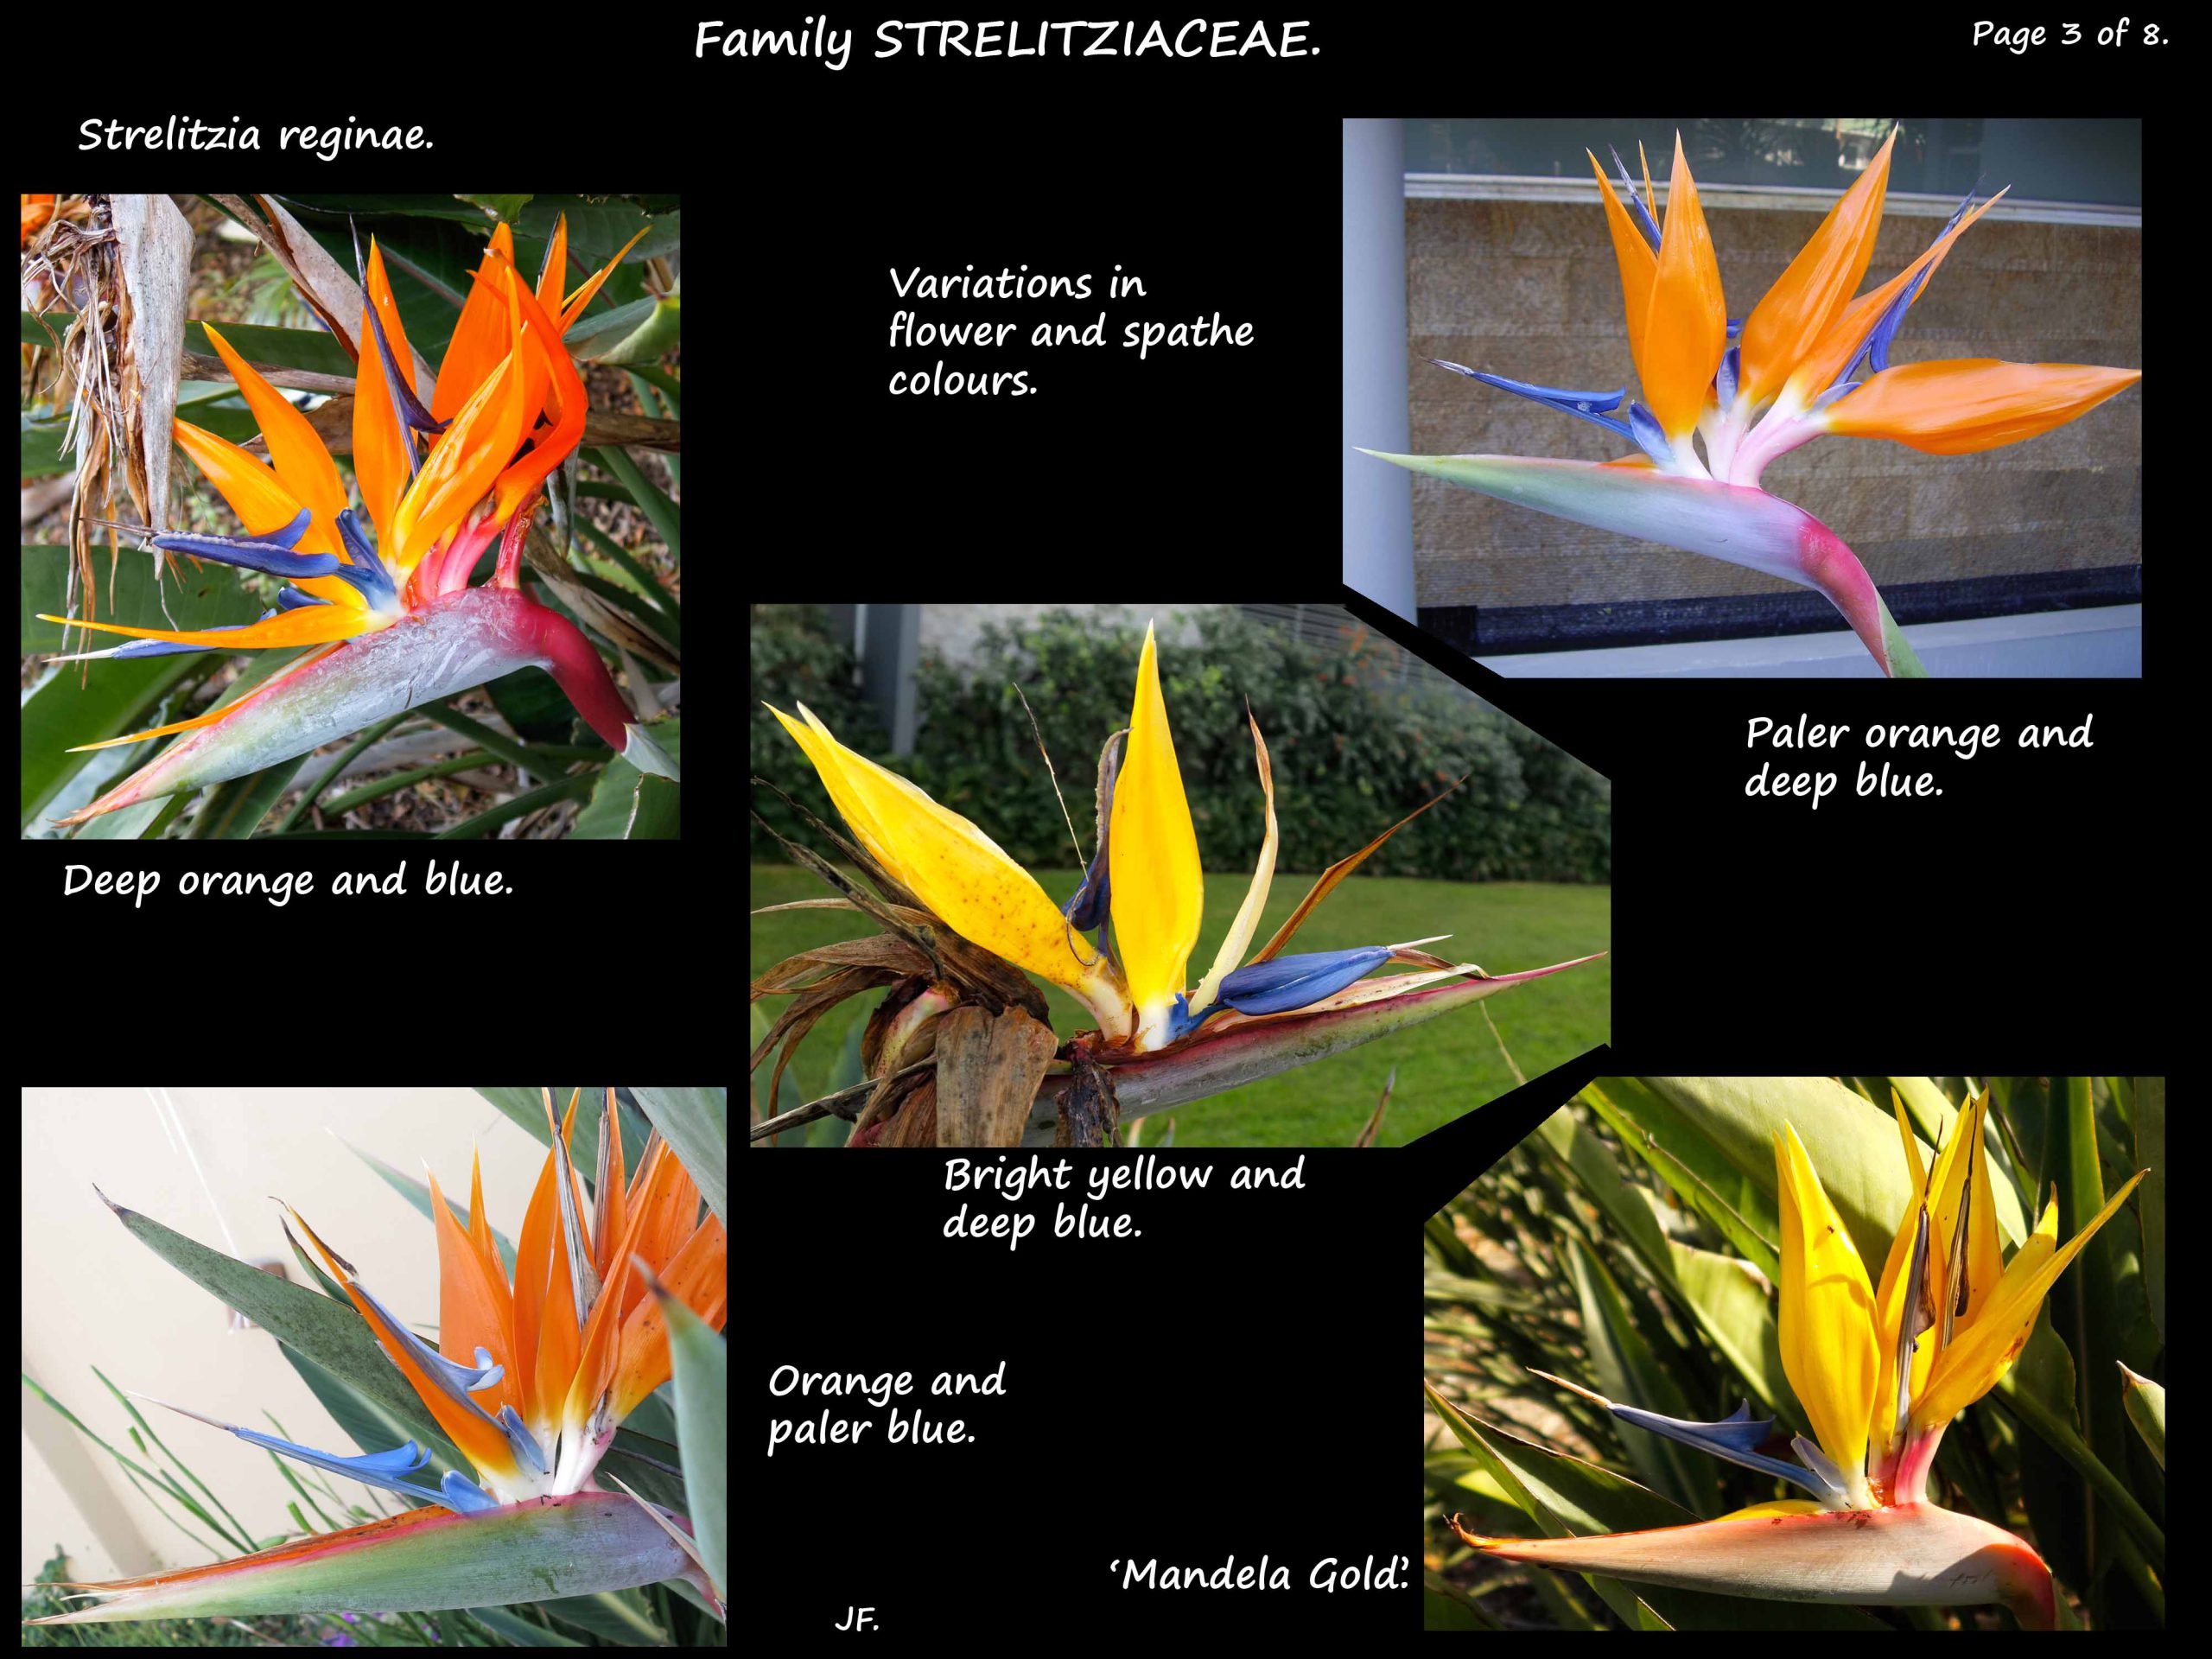 3 Flowers of Strelitzia reginae